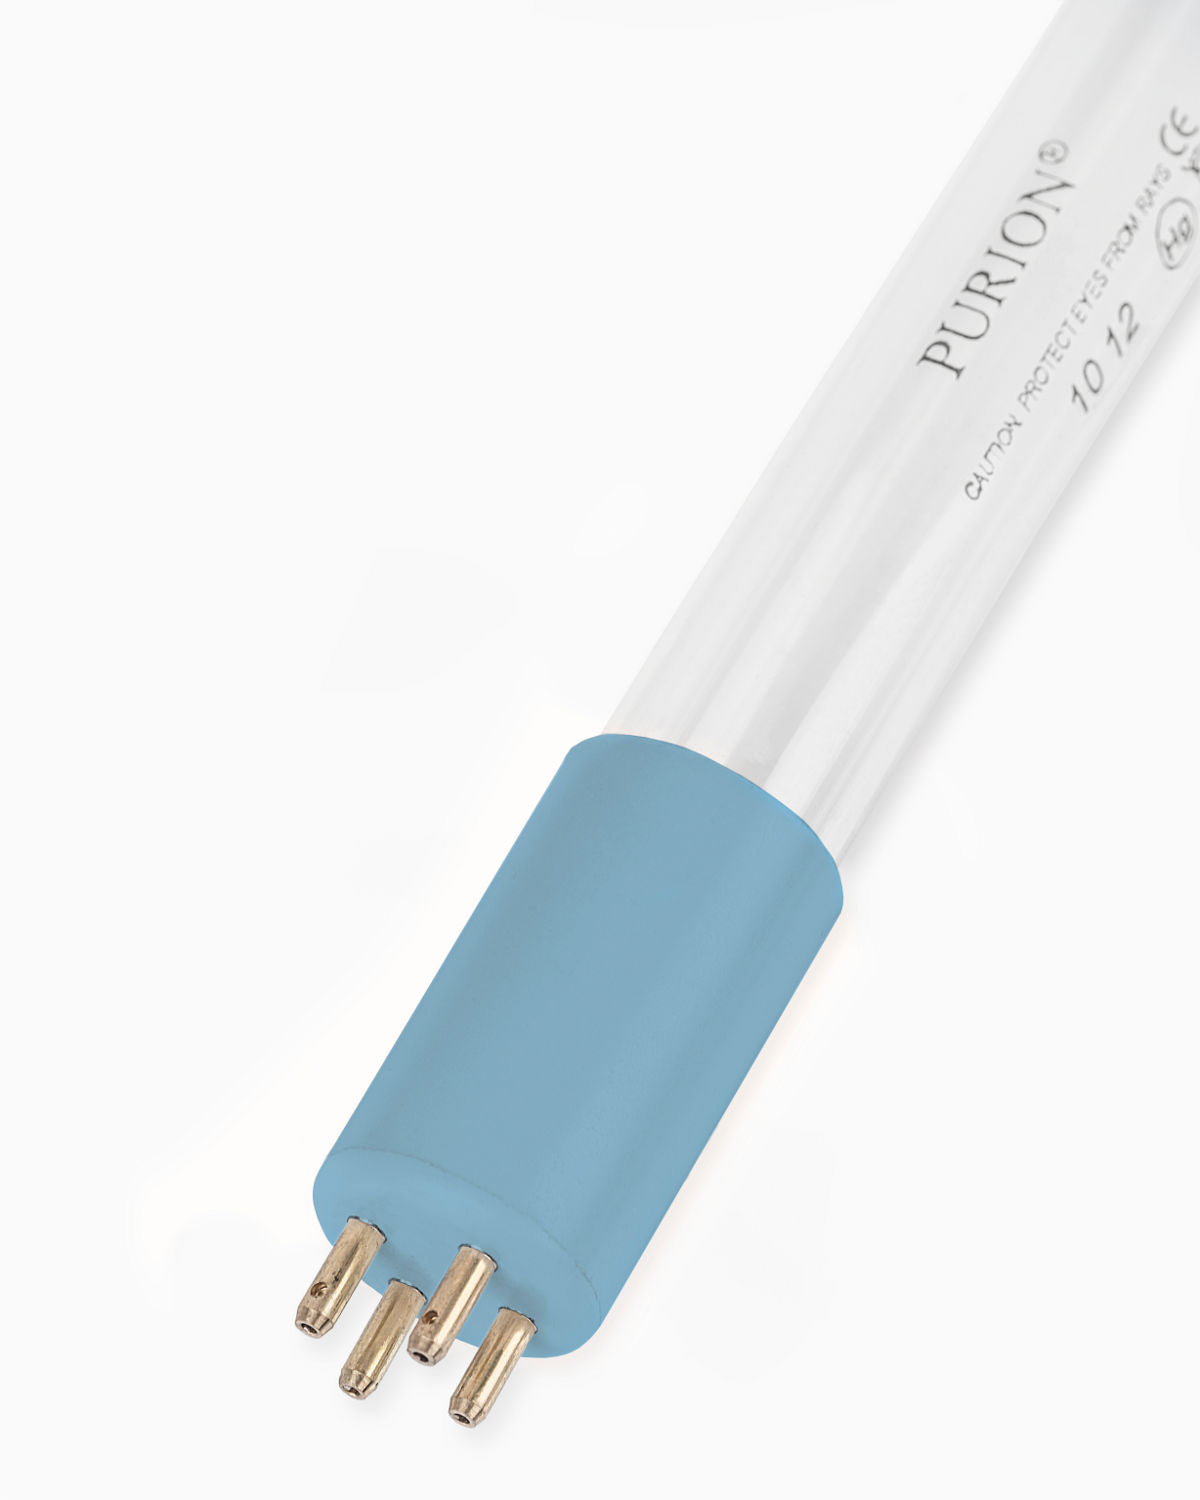 Eine blaue Lichtröhre auf weißem Hintergrund PURION 2500 90 W DUAL OTC UV-C-Desinfektionsanlage der PURION GmbH für keimfreies Wasser.